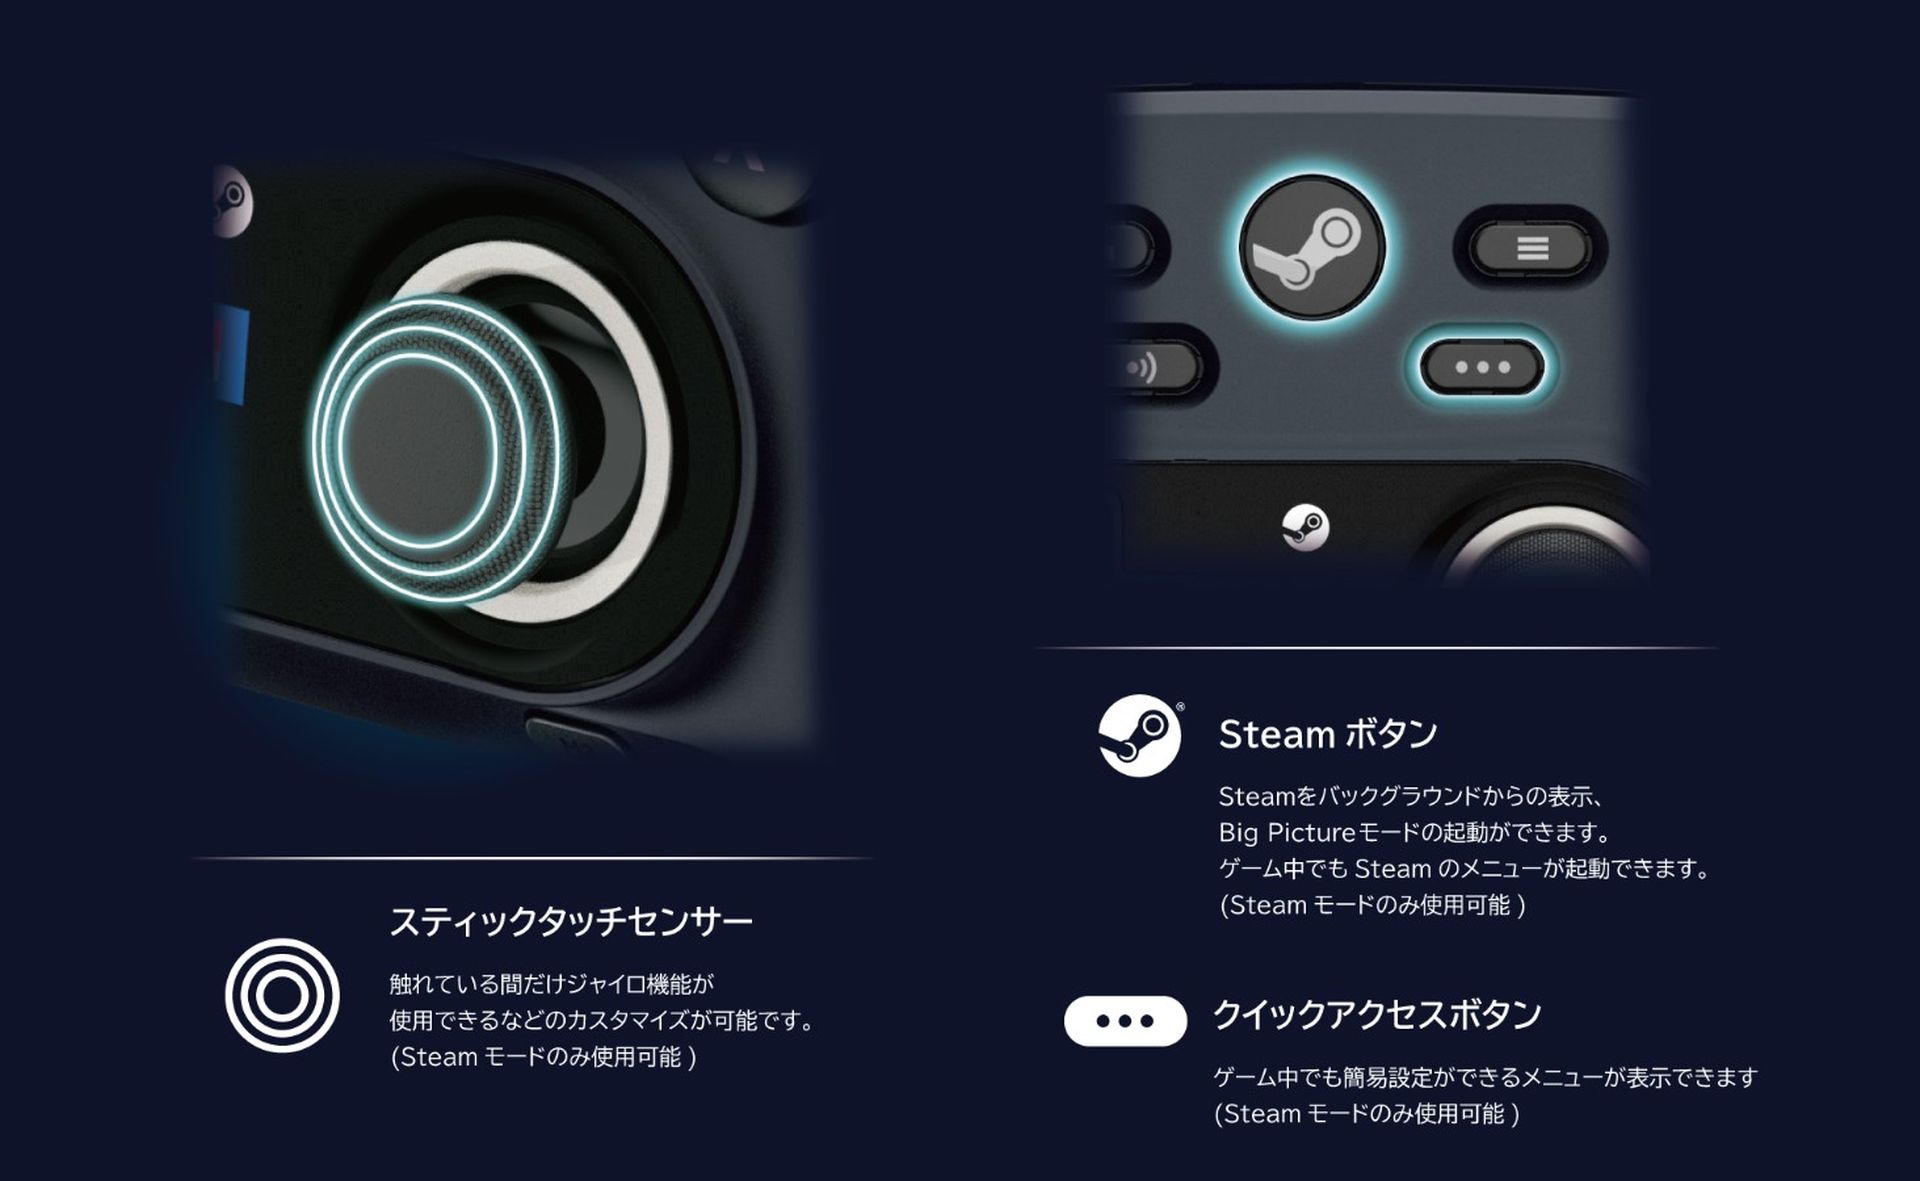 Hori Steam Controller revelado: aqui estão os recursos, preço e data de lançamento